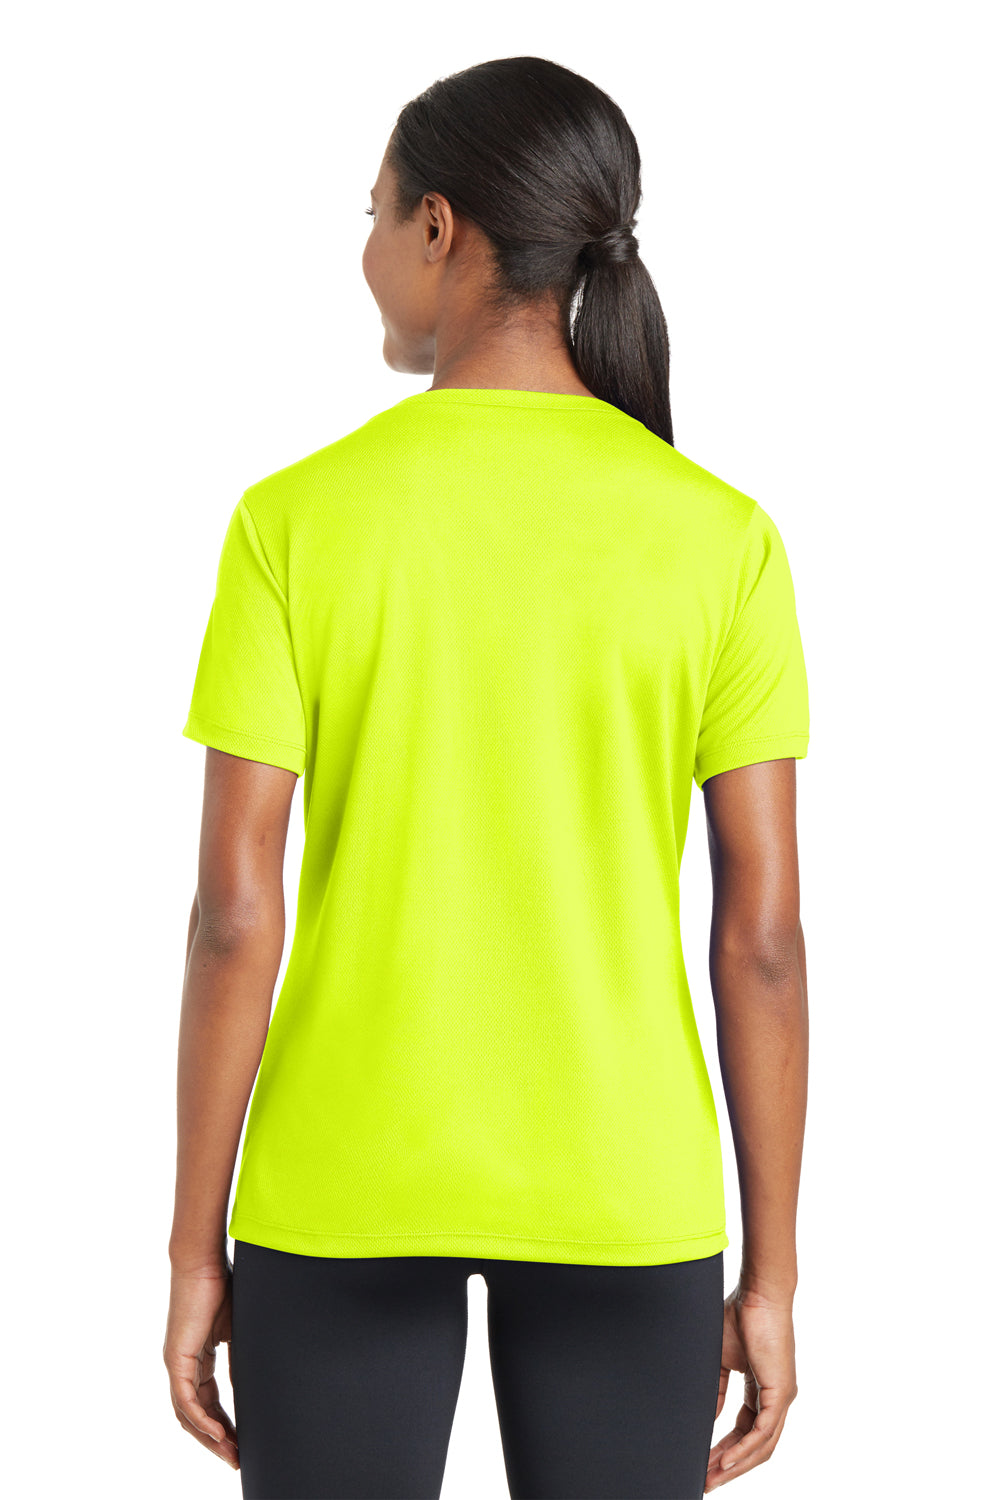 Sport-Tek LST340 Womens RacerMesh Moisture Wicking Short Sleeve V-Neck T-Shirt Neon Yellow Back